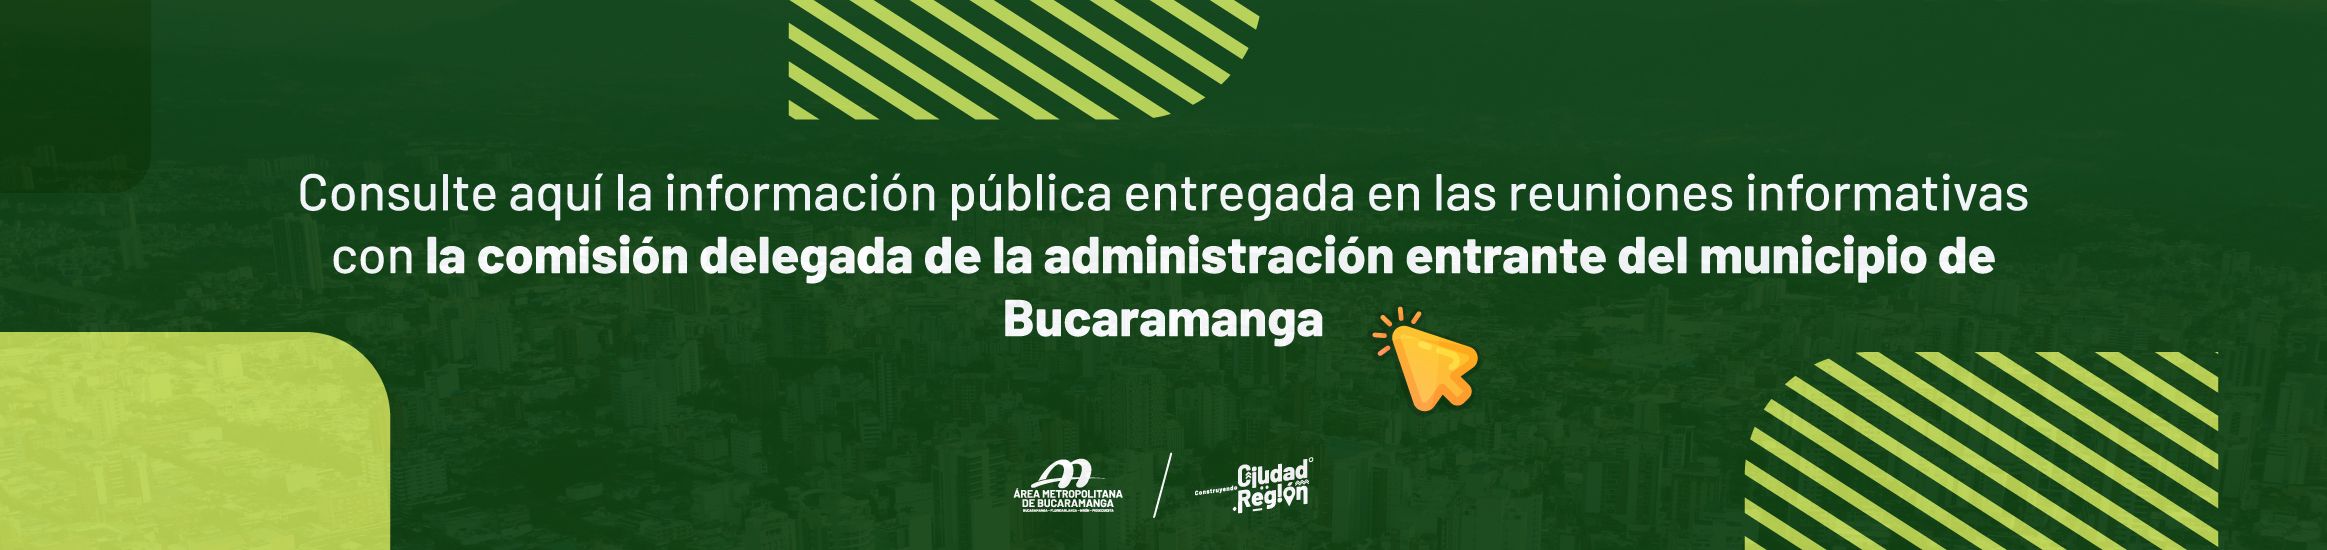 Consulte aquí la información pública entregada en las reuniones informativas con la comisión delegada de la administración entrante del municipio de Bucaramanga